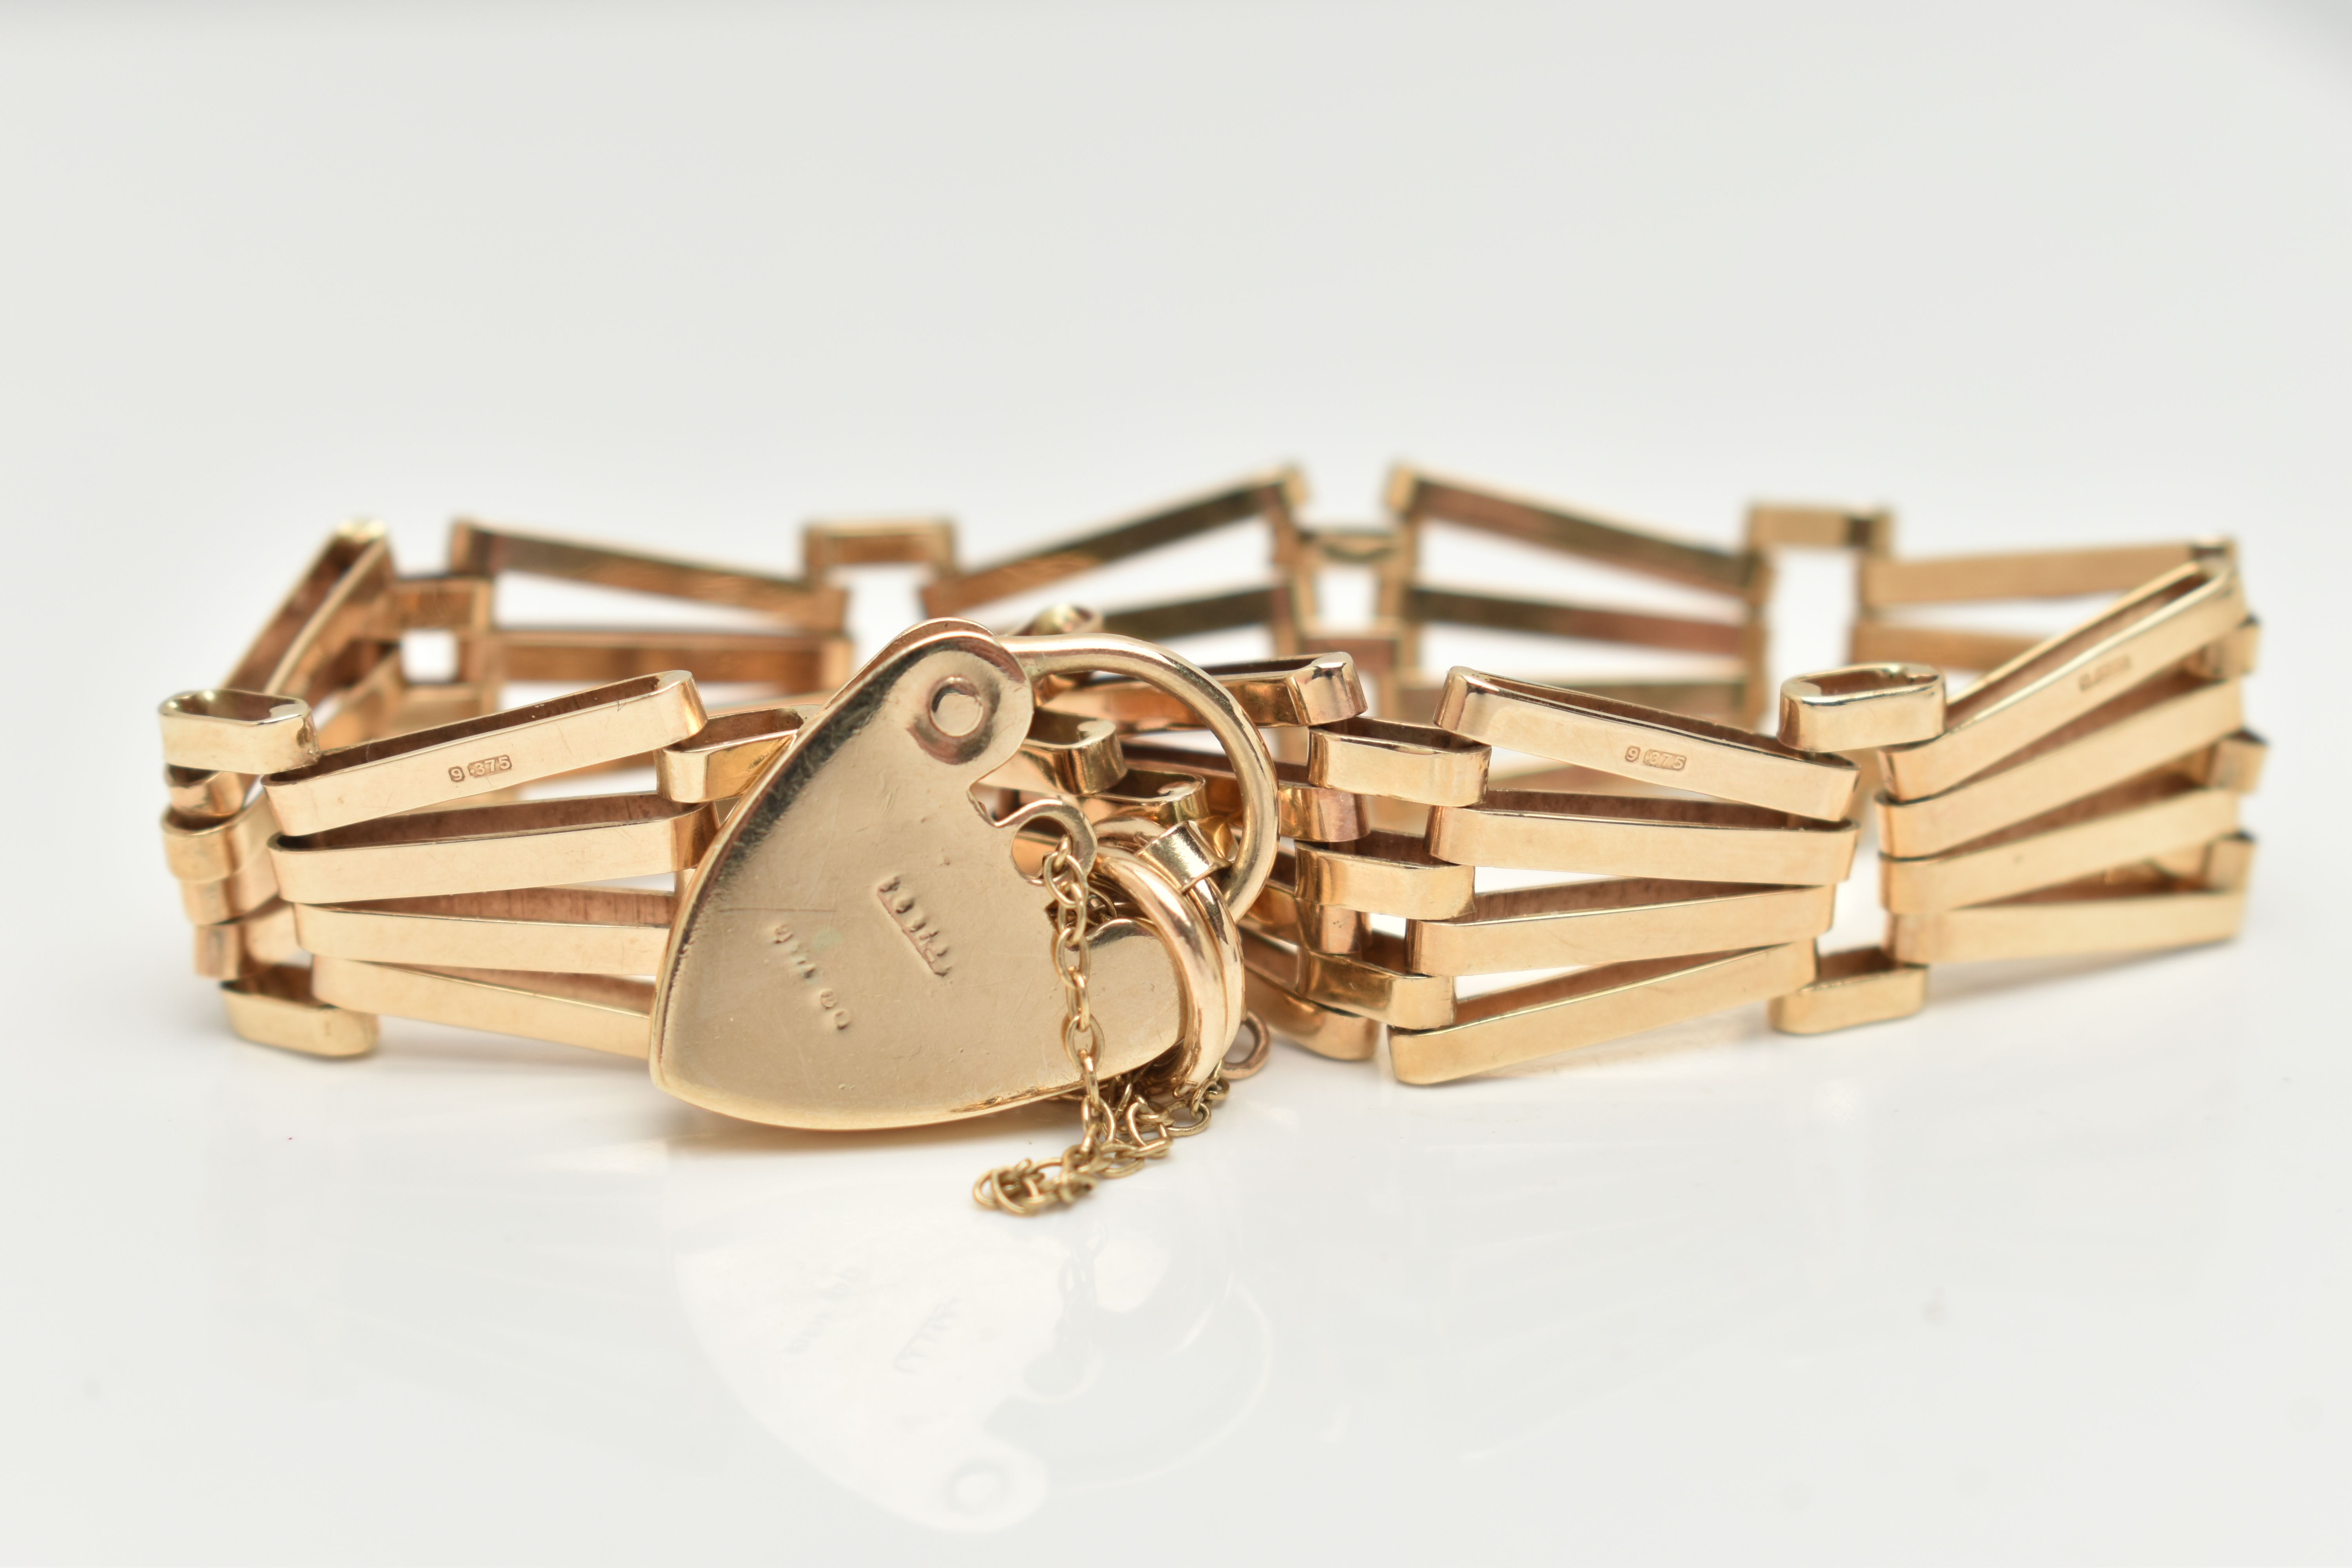 A 9CT GOLD GATE BRACELET, fancy gate bracelet, each link stamped 9.375, jump ring stamped 375, - Image 2 of 2